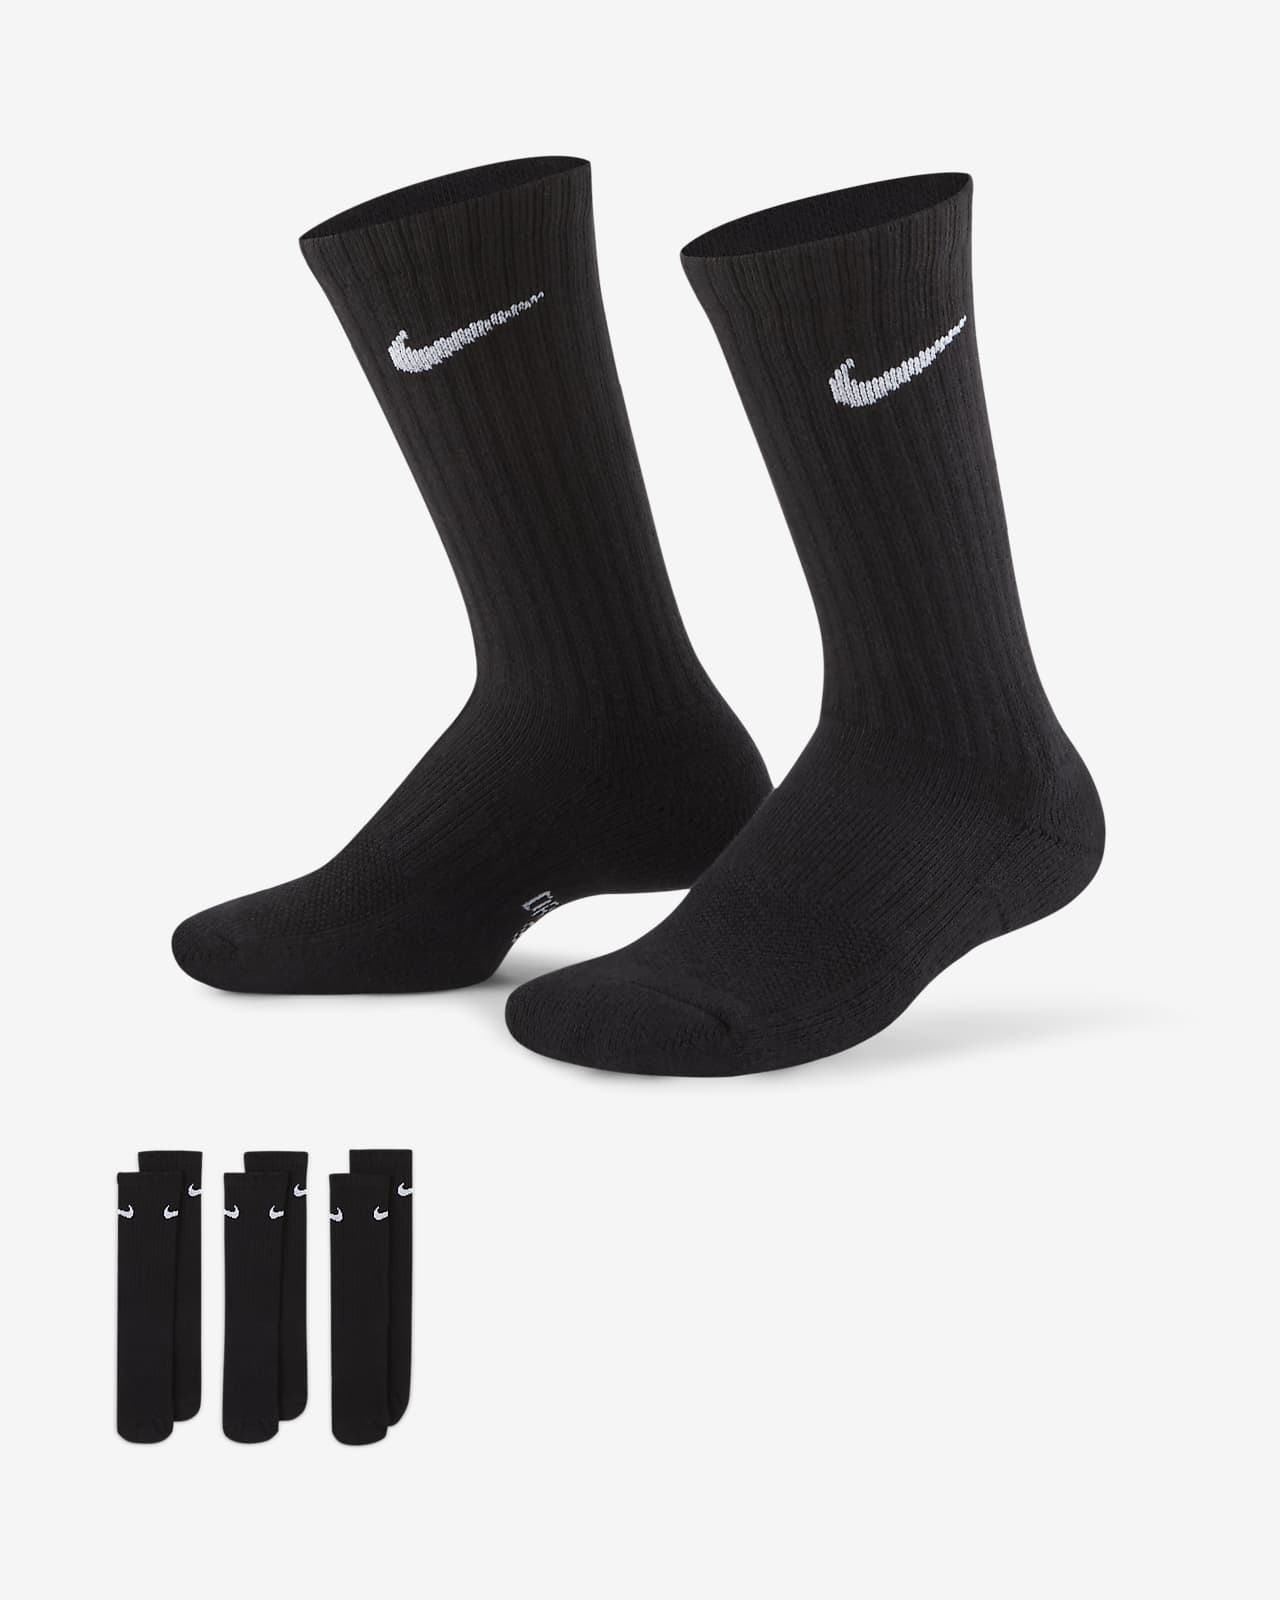 Chaussettes mi-mollet rembourrées Nike Everyday pour Enfant (3 paires)